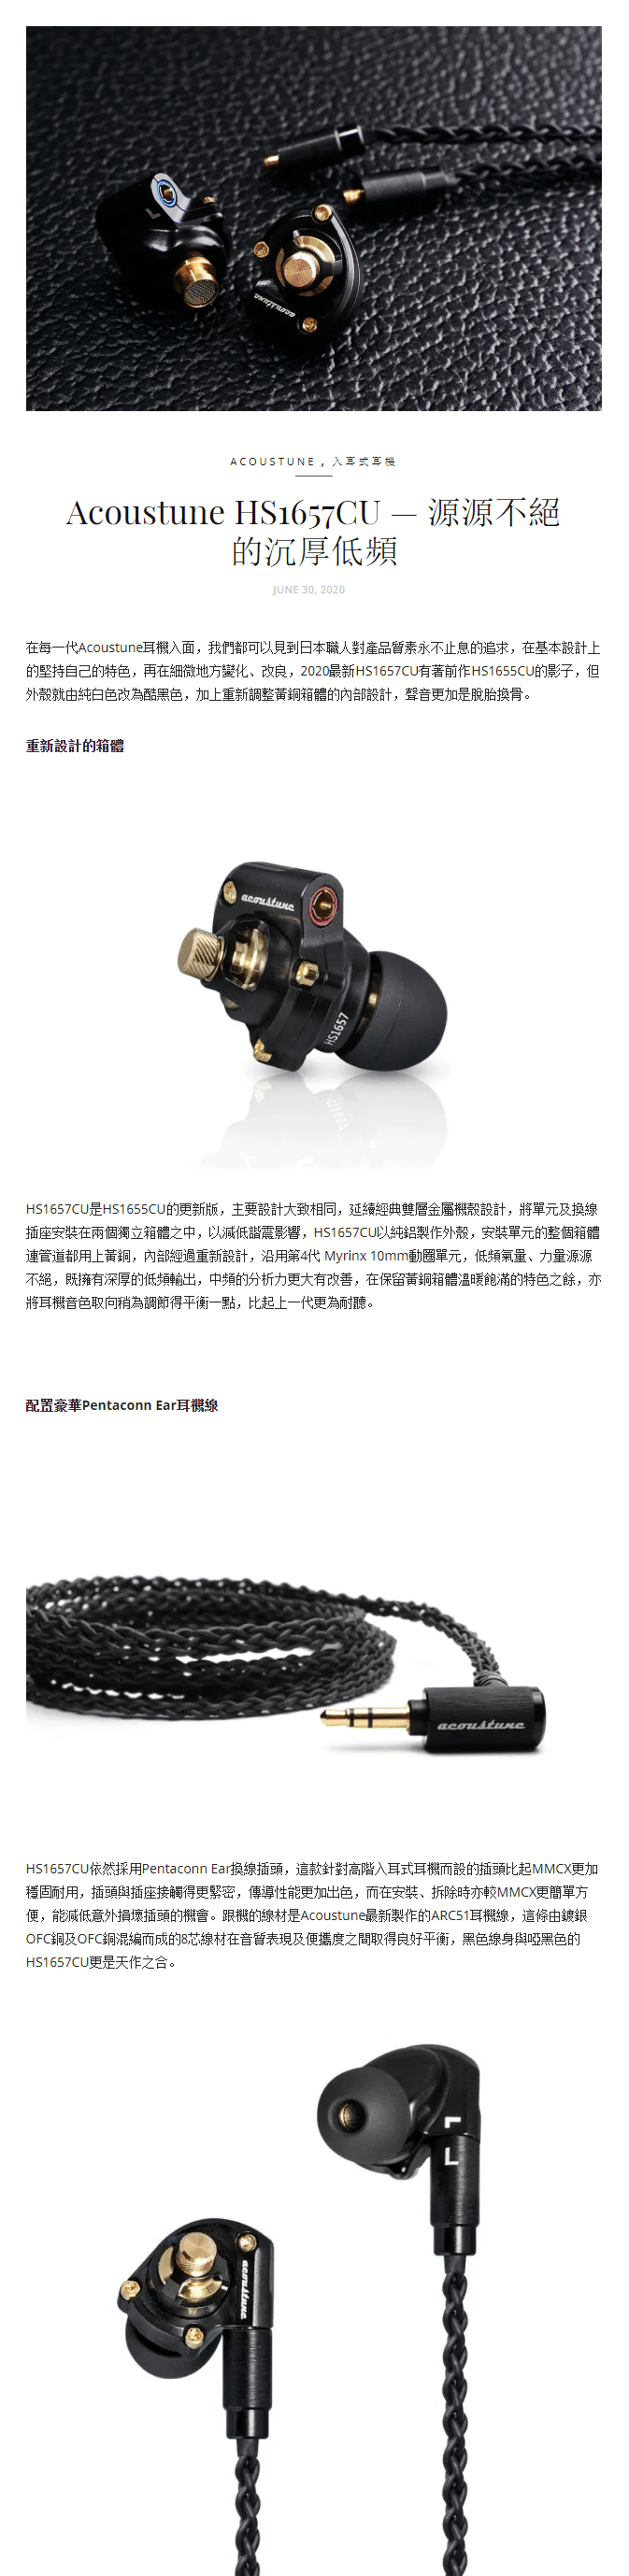 陳列品】日本Acoustune - HS1657CU 雙層金屬外殼入耳式耳機| 日本製造 